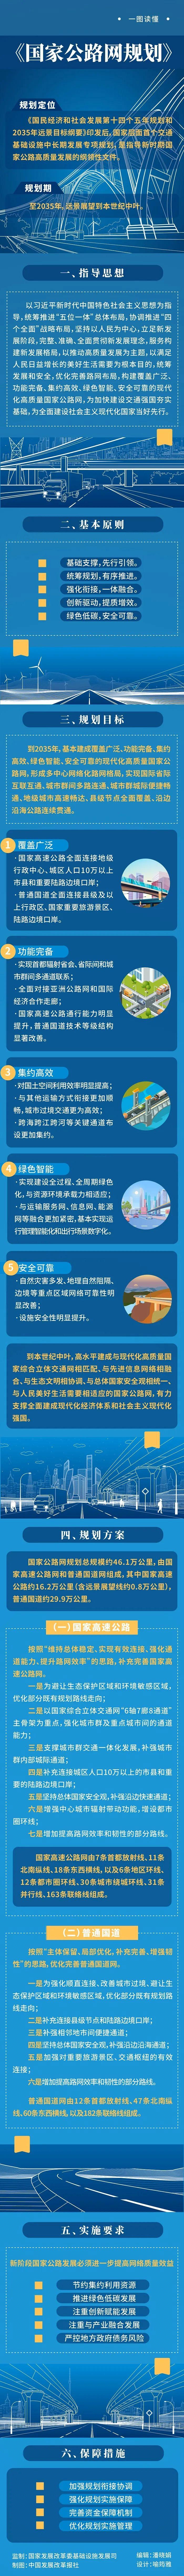 北京朝阳区今日0时至15时新增新冠肺炎病毒感染者14名水杉最高能长多少米